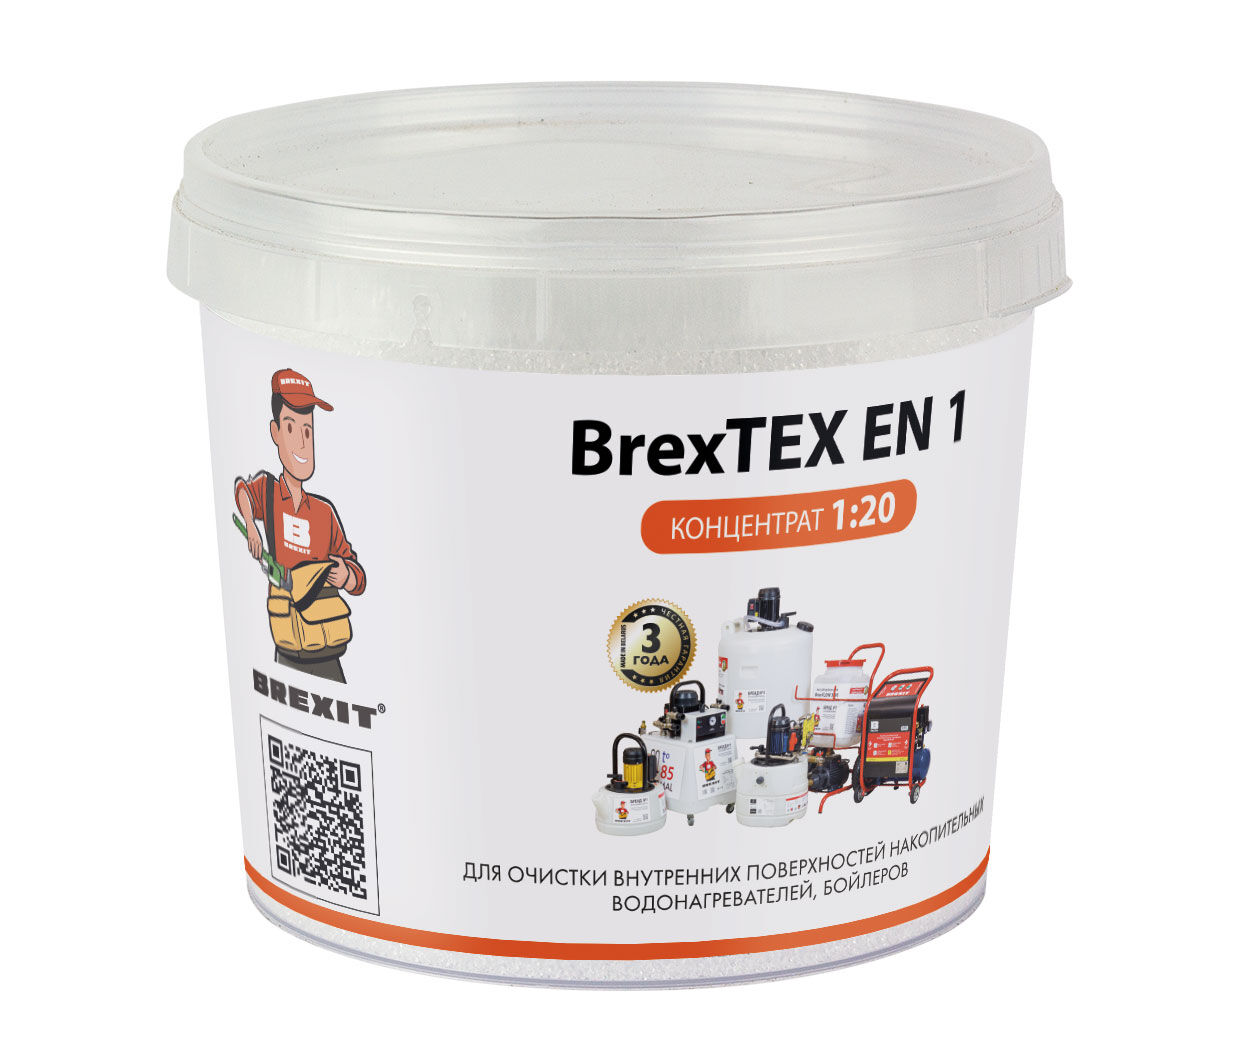 Порошкообразный реагент для очистки водонагревателей BrexTEX EN 1 brexit